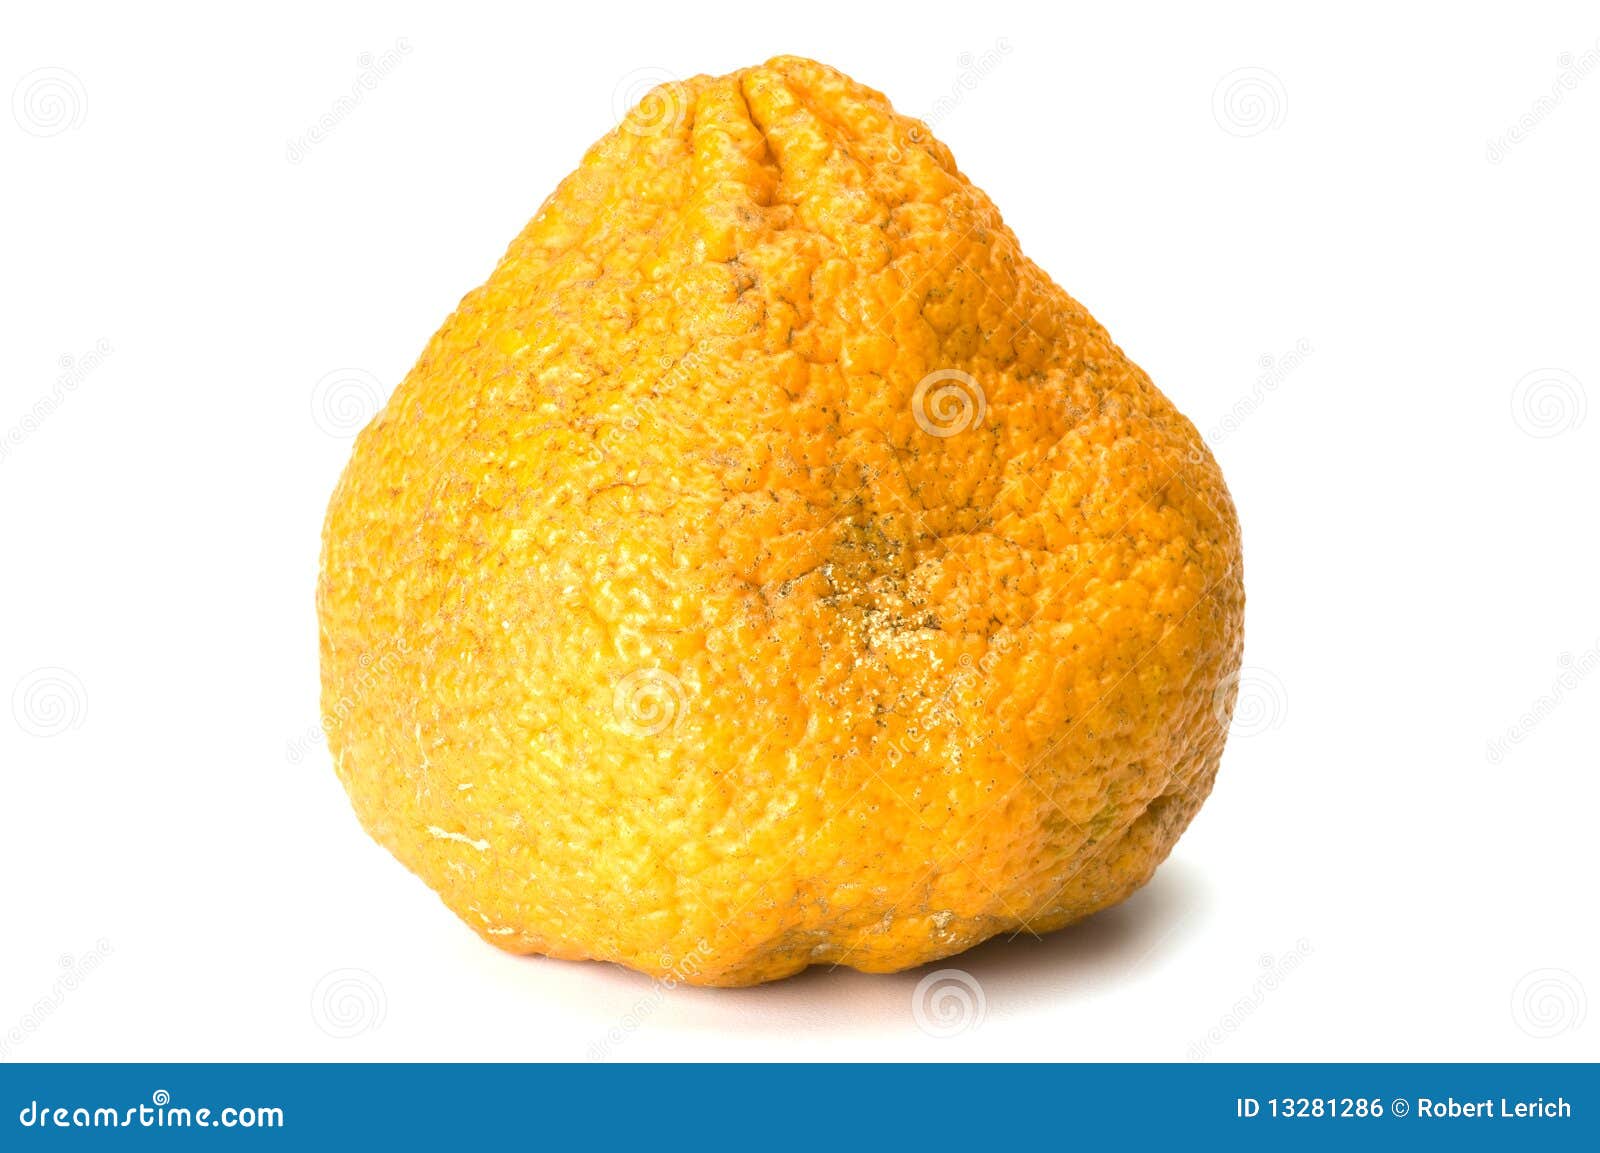 ugli fruit stock photo. image of hybrid, background, jamaican